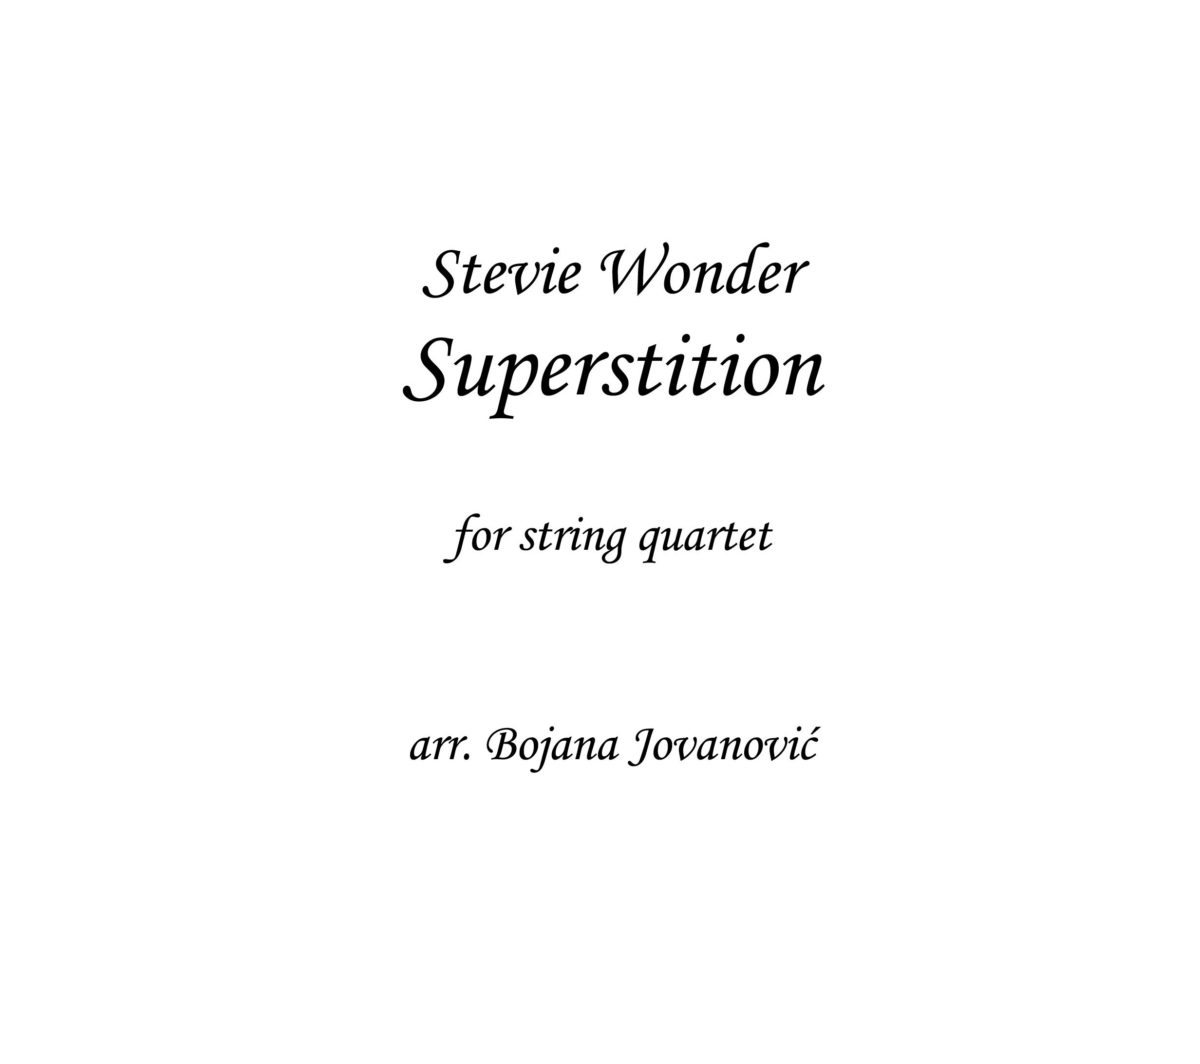 Superstition (Stevie Wonder) - Sheet Music